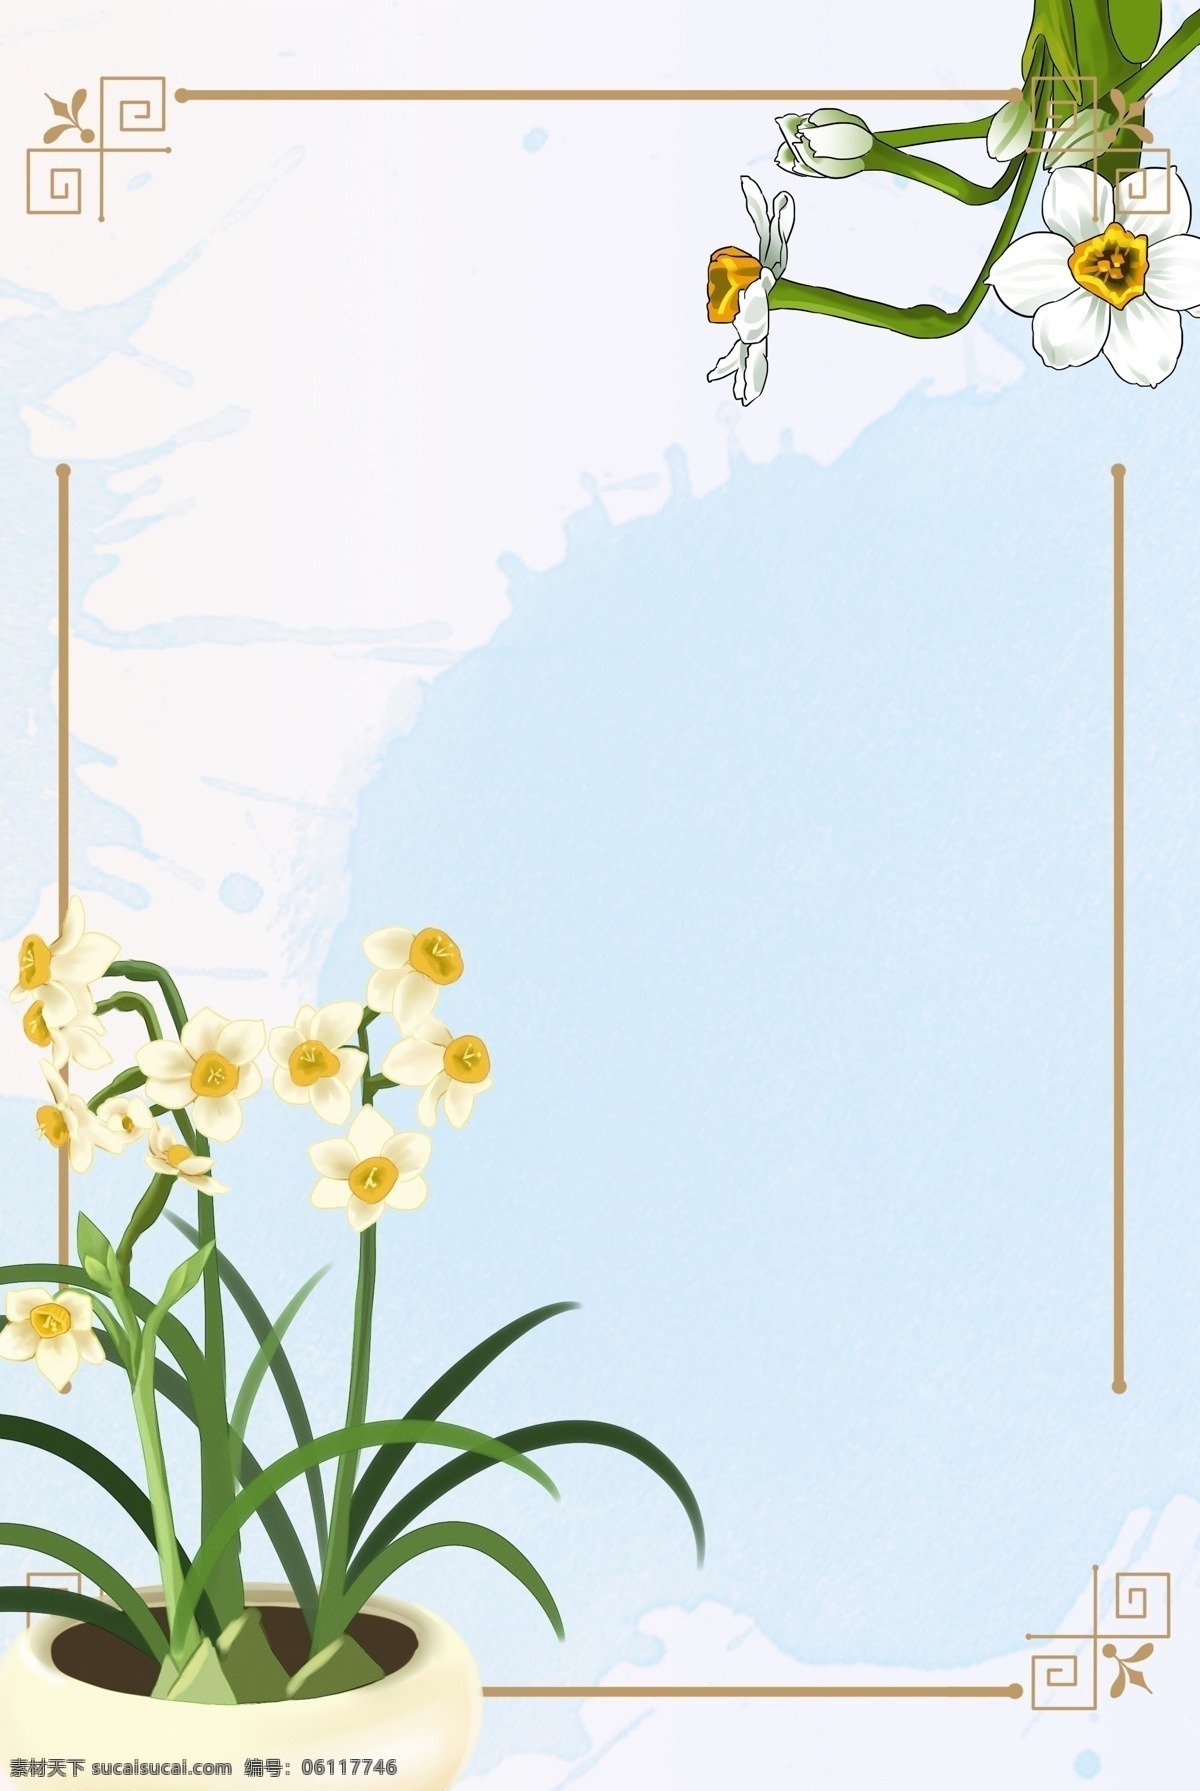 八月 水仙 唯美 背景 绿色植物 中国风 传统 古风 叶子 培育 夏季 春天 植物 水墨 淡彩 盆栽 花朵